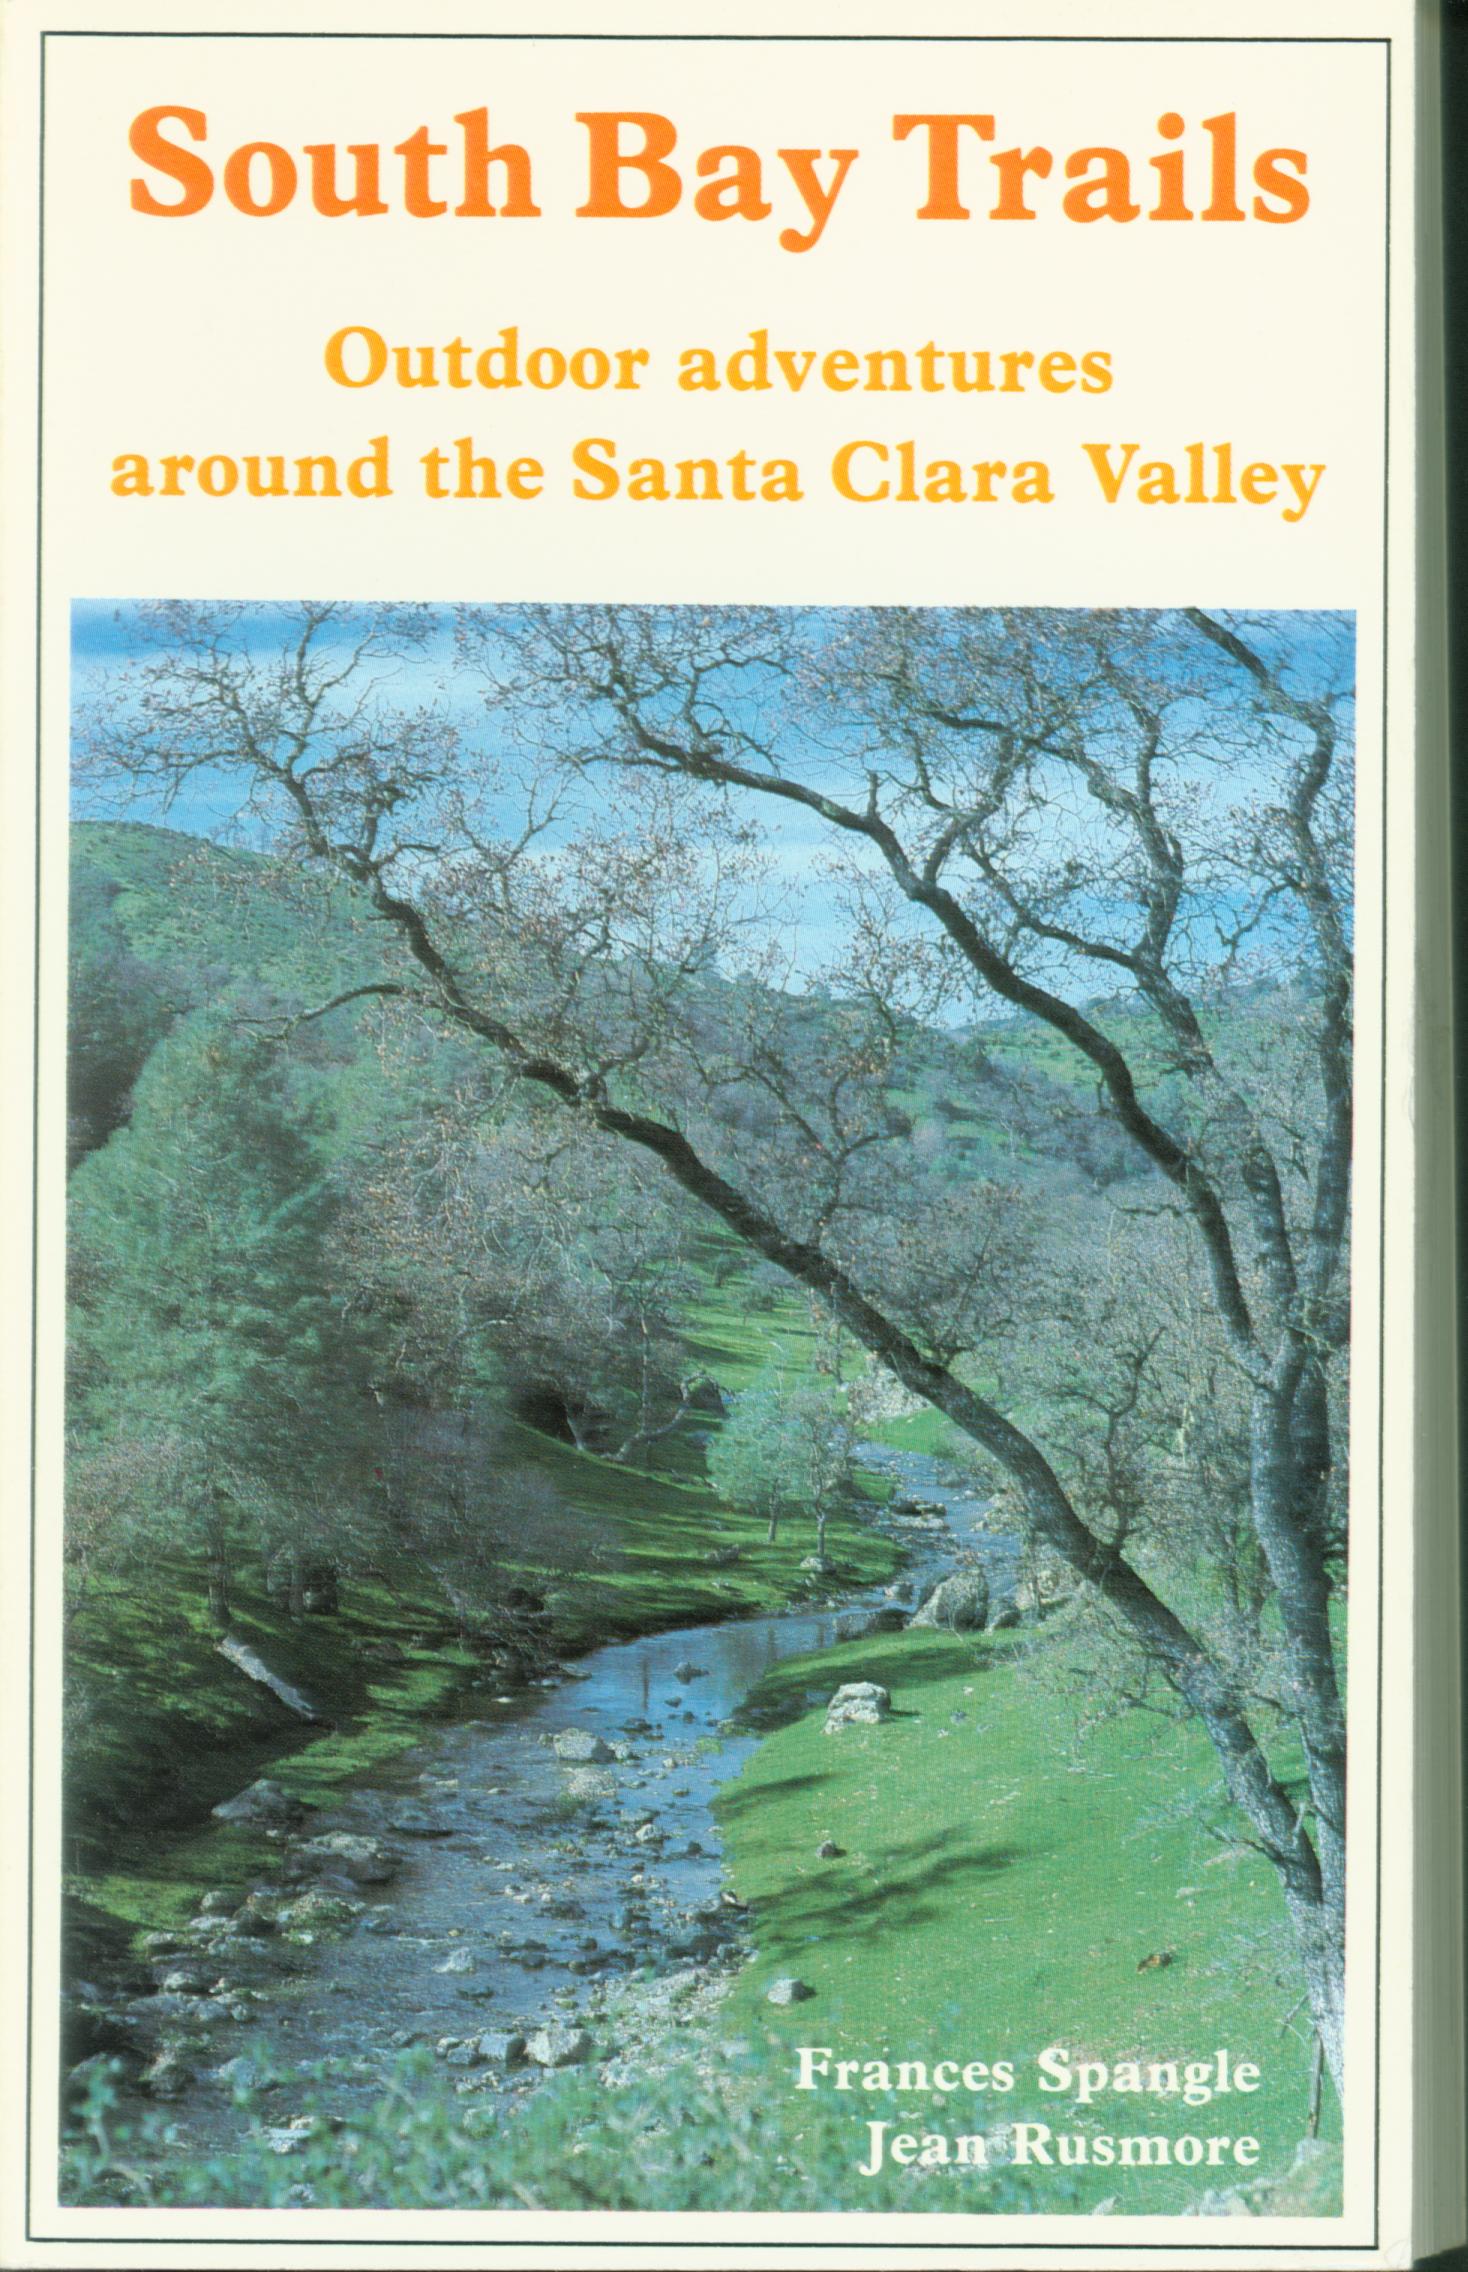 SOUTH BAY TRAILS: Outdoor adventures around the Santa Clara Valley (CA). 